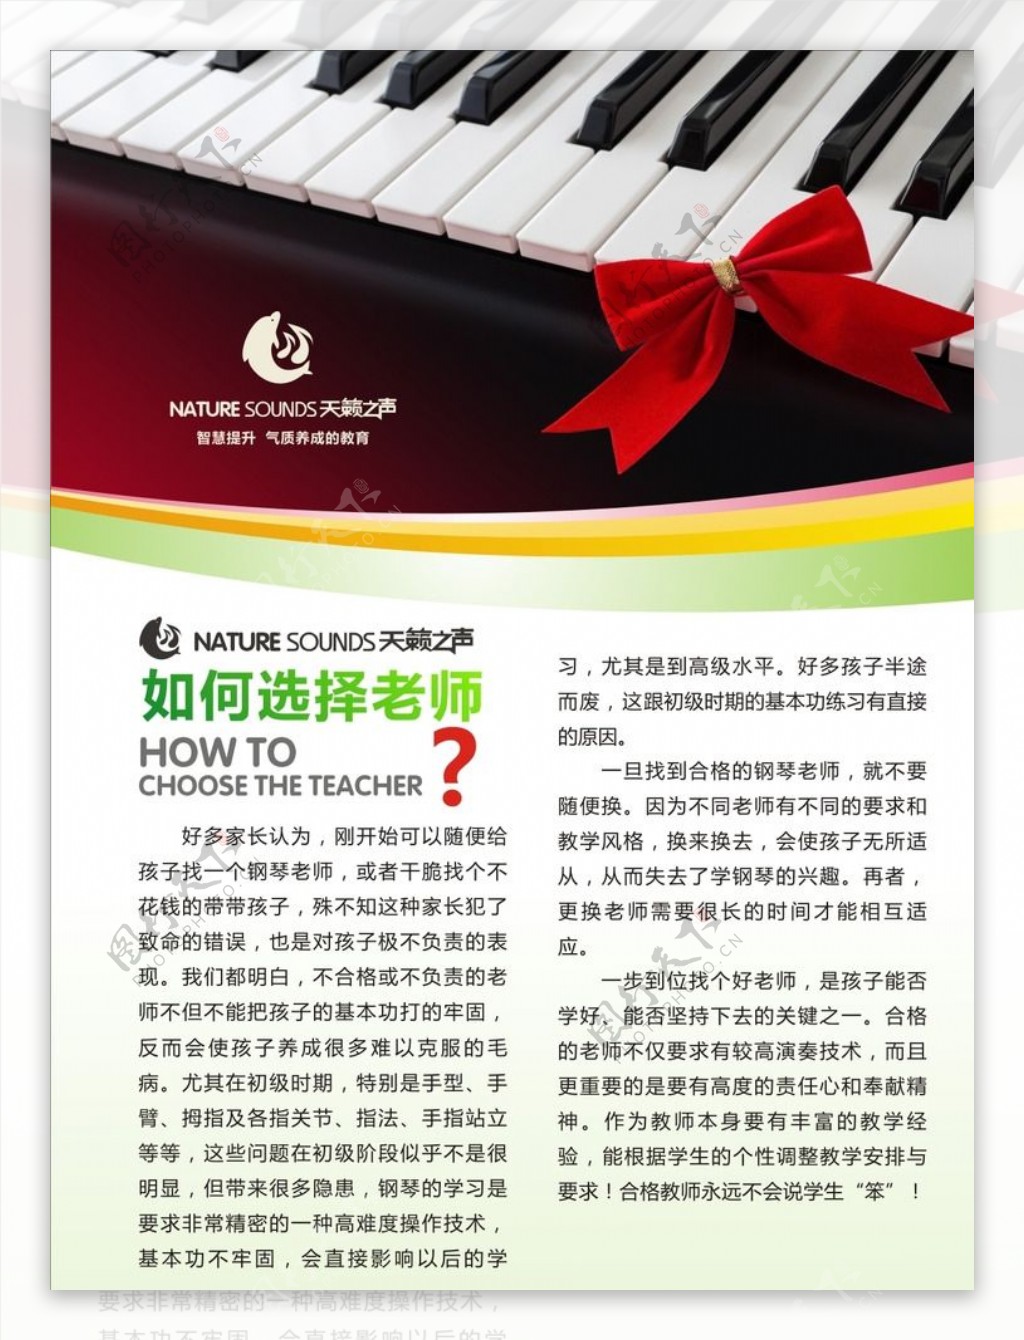 钢琴教育展板图片